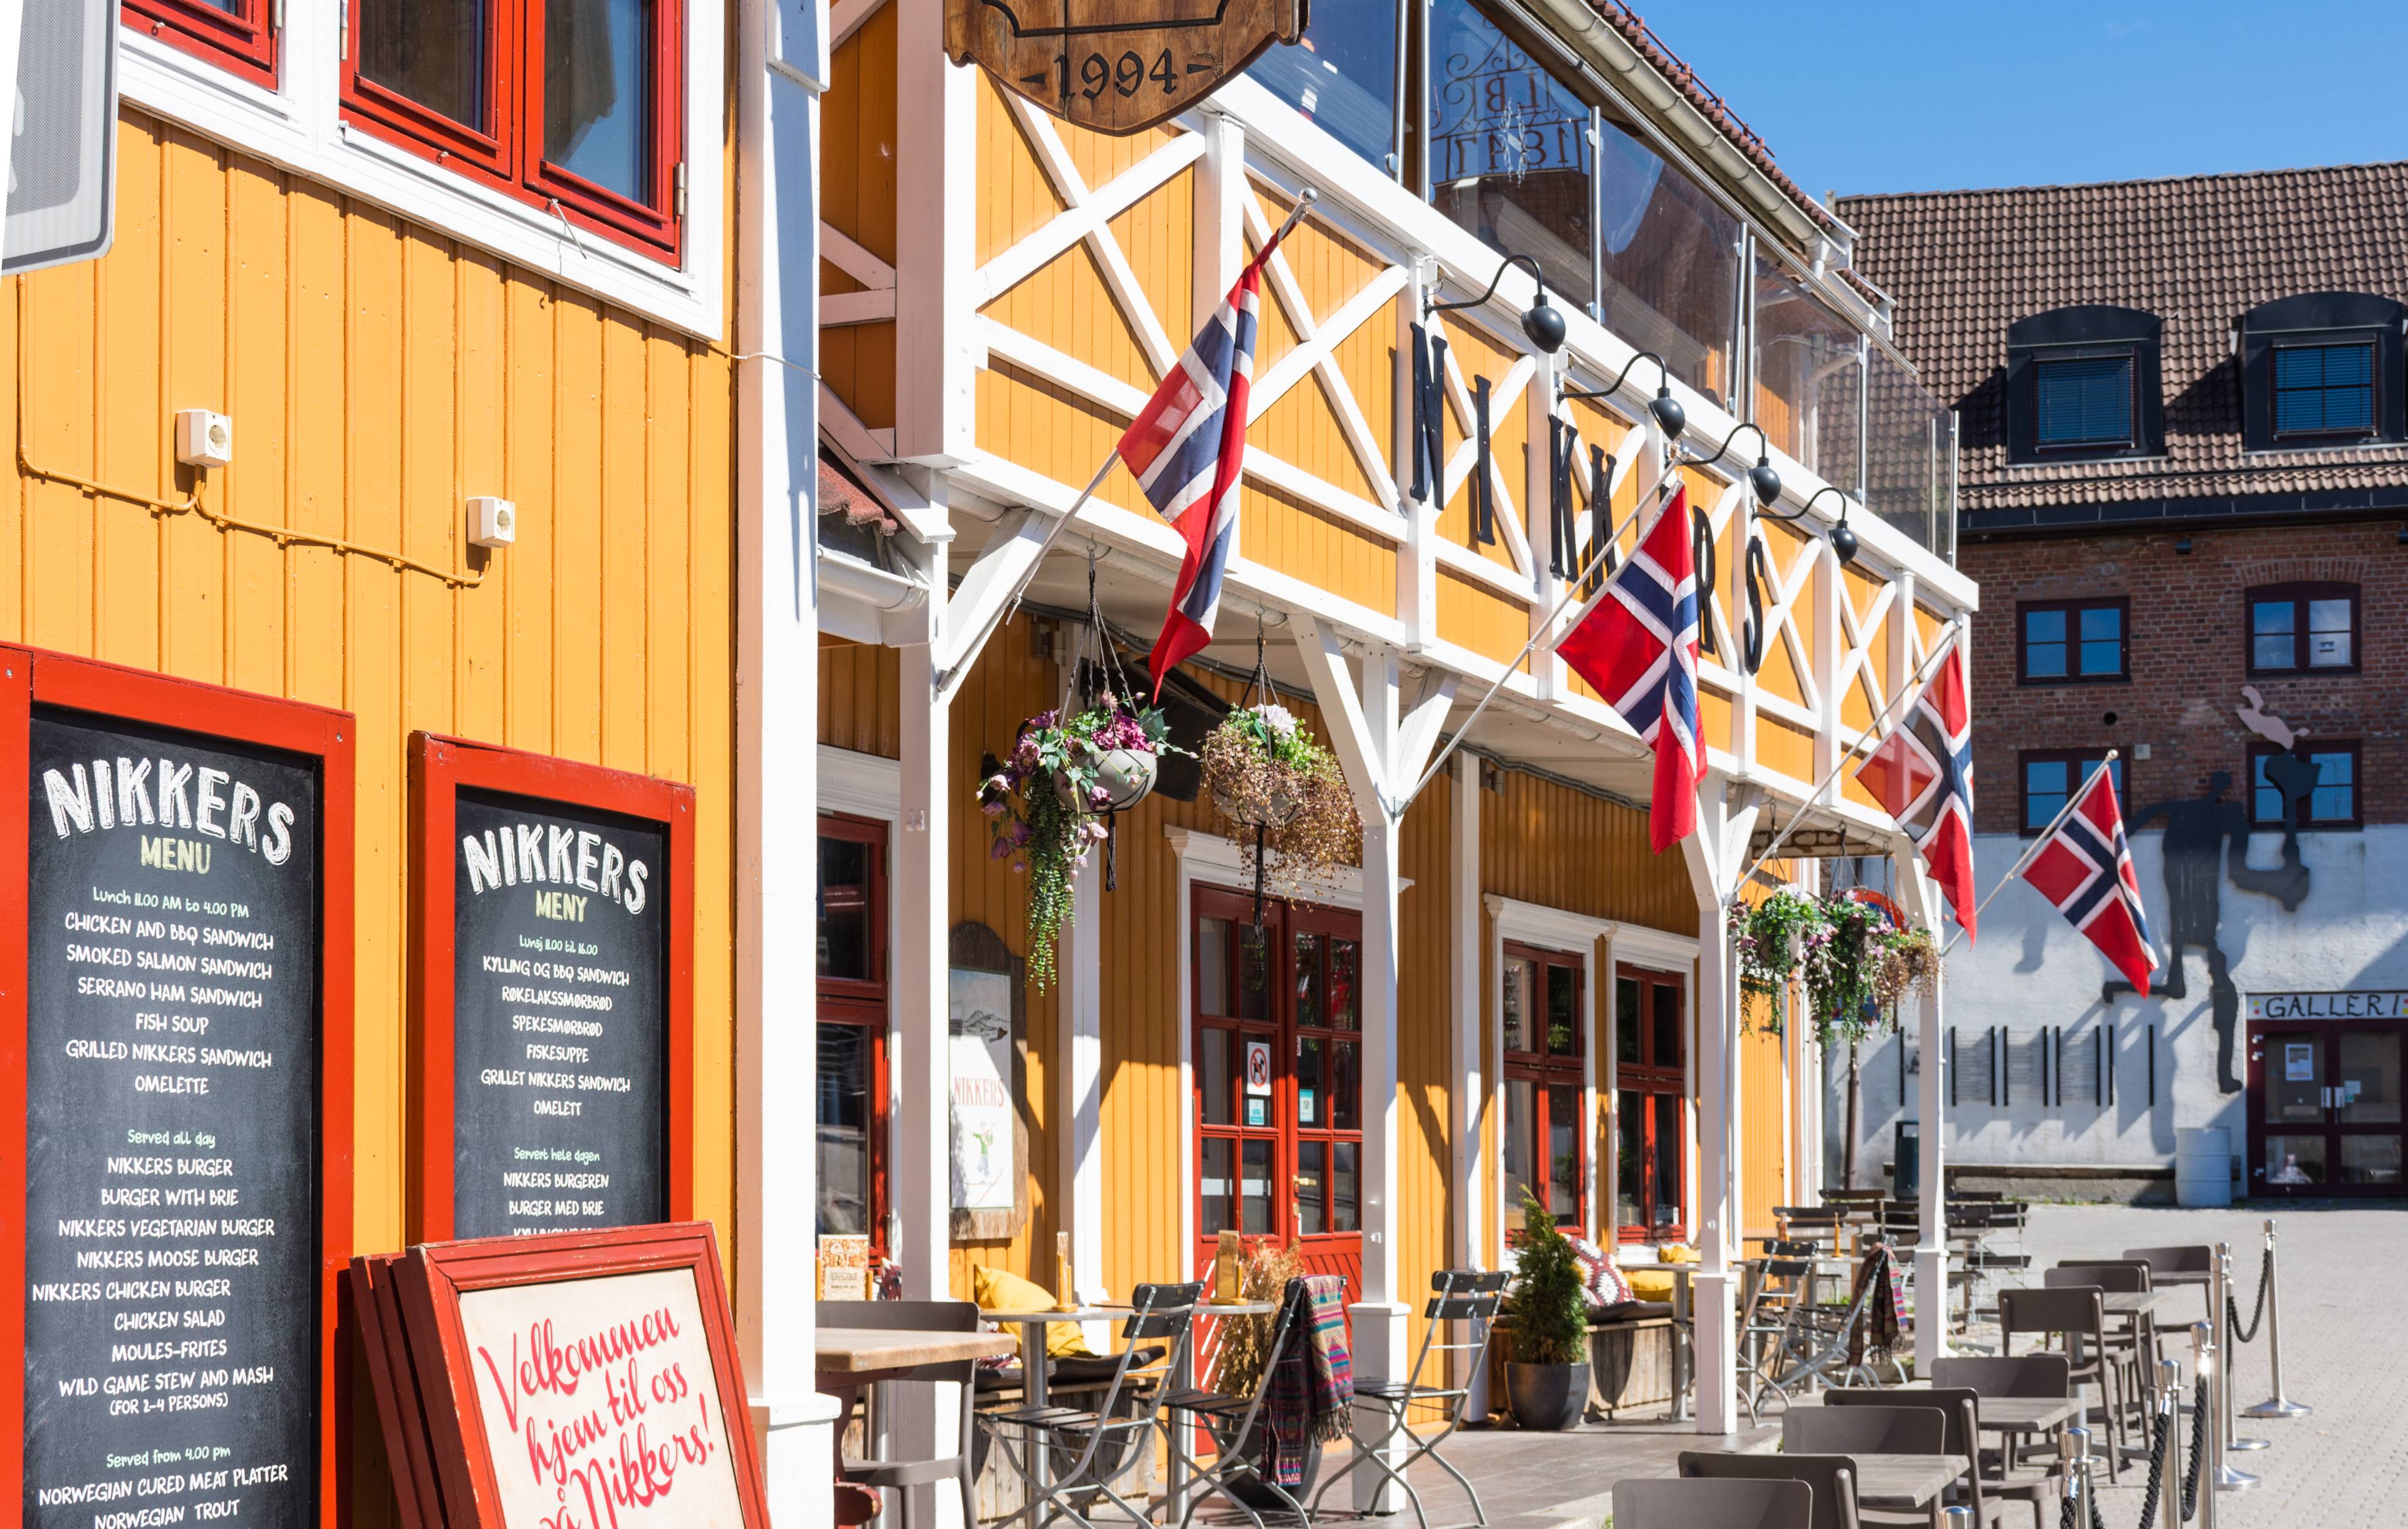 ristorante giallo lillehammer norvegia